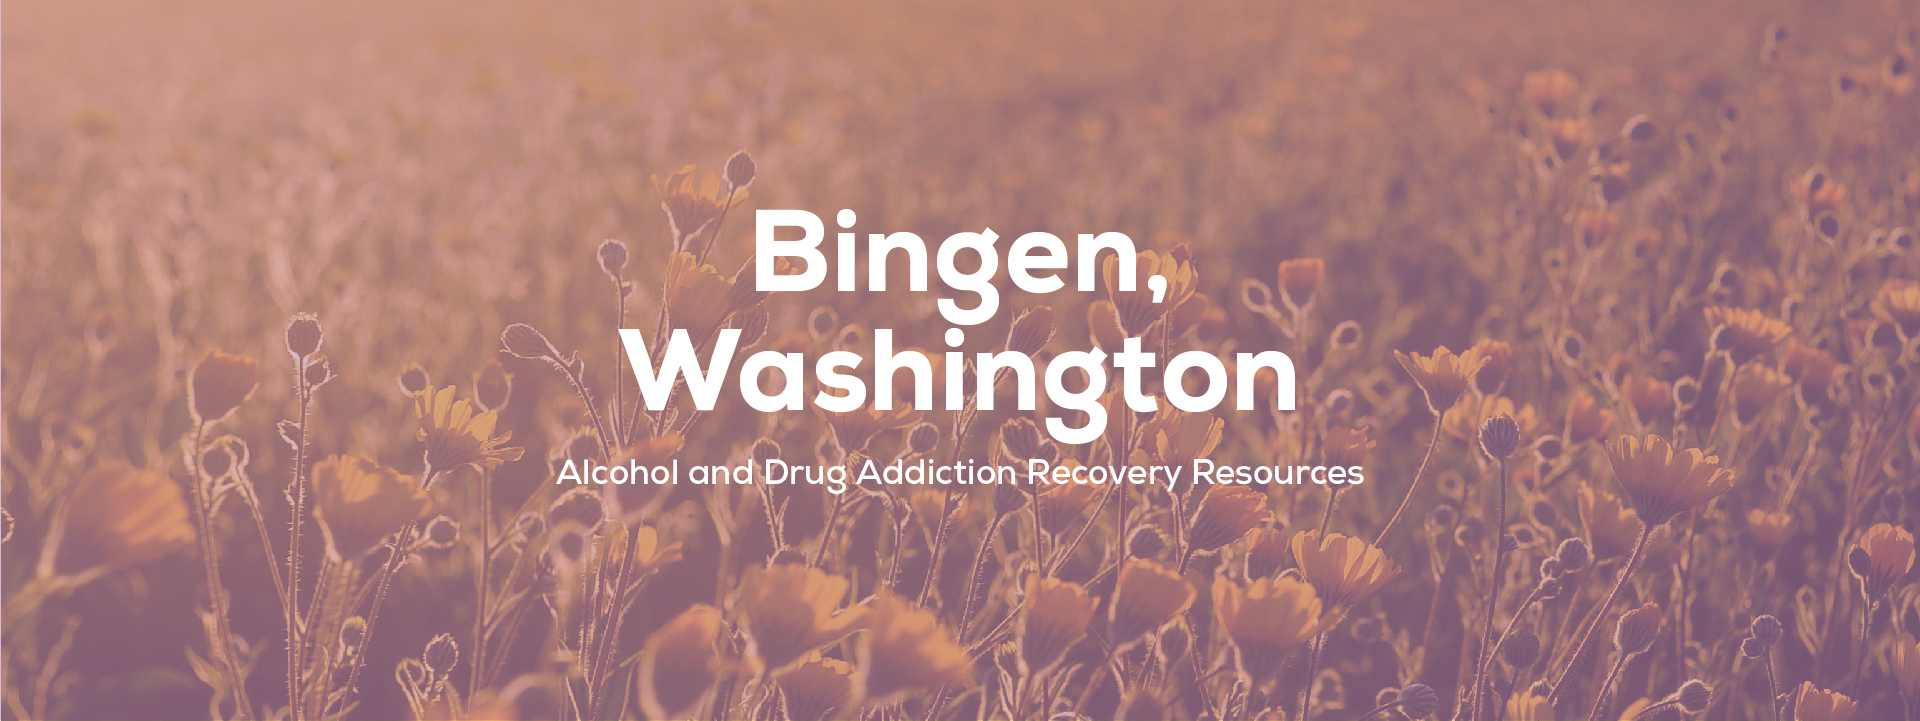 Bingen, Washington addiction resources header